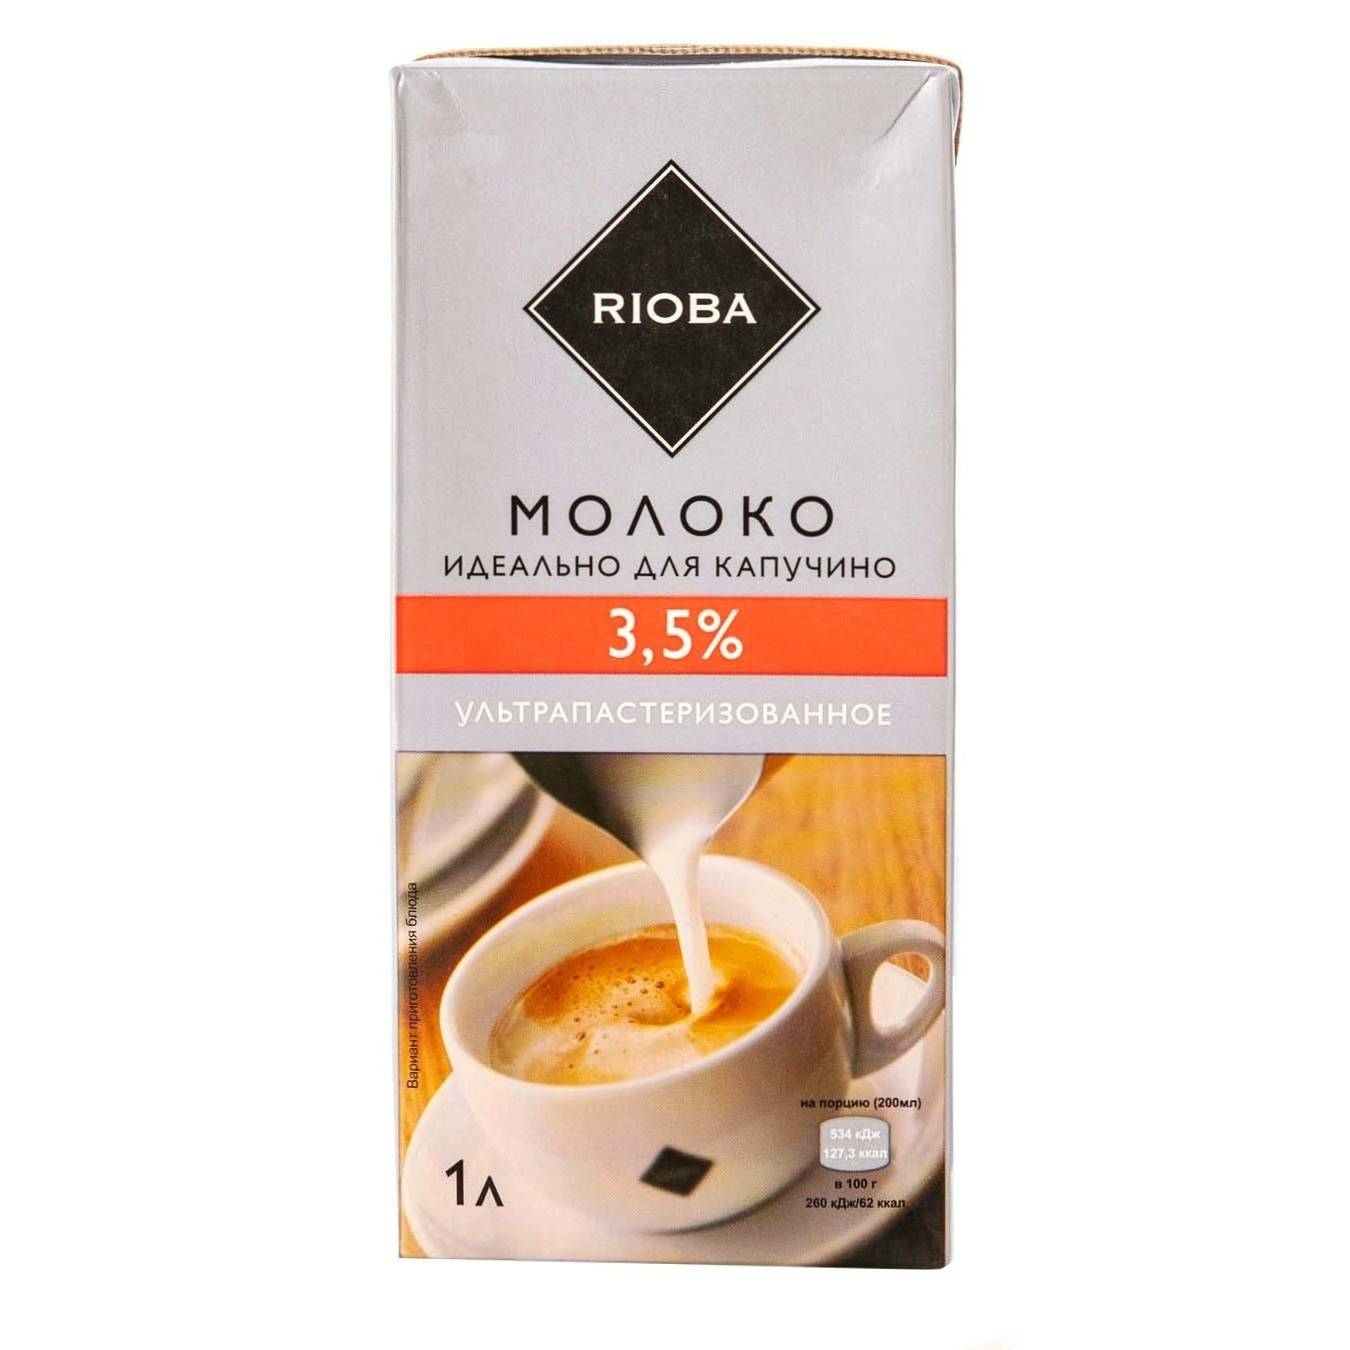 Кофе в зернах rioba espresso platinum 1 кг